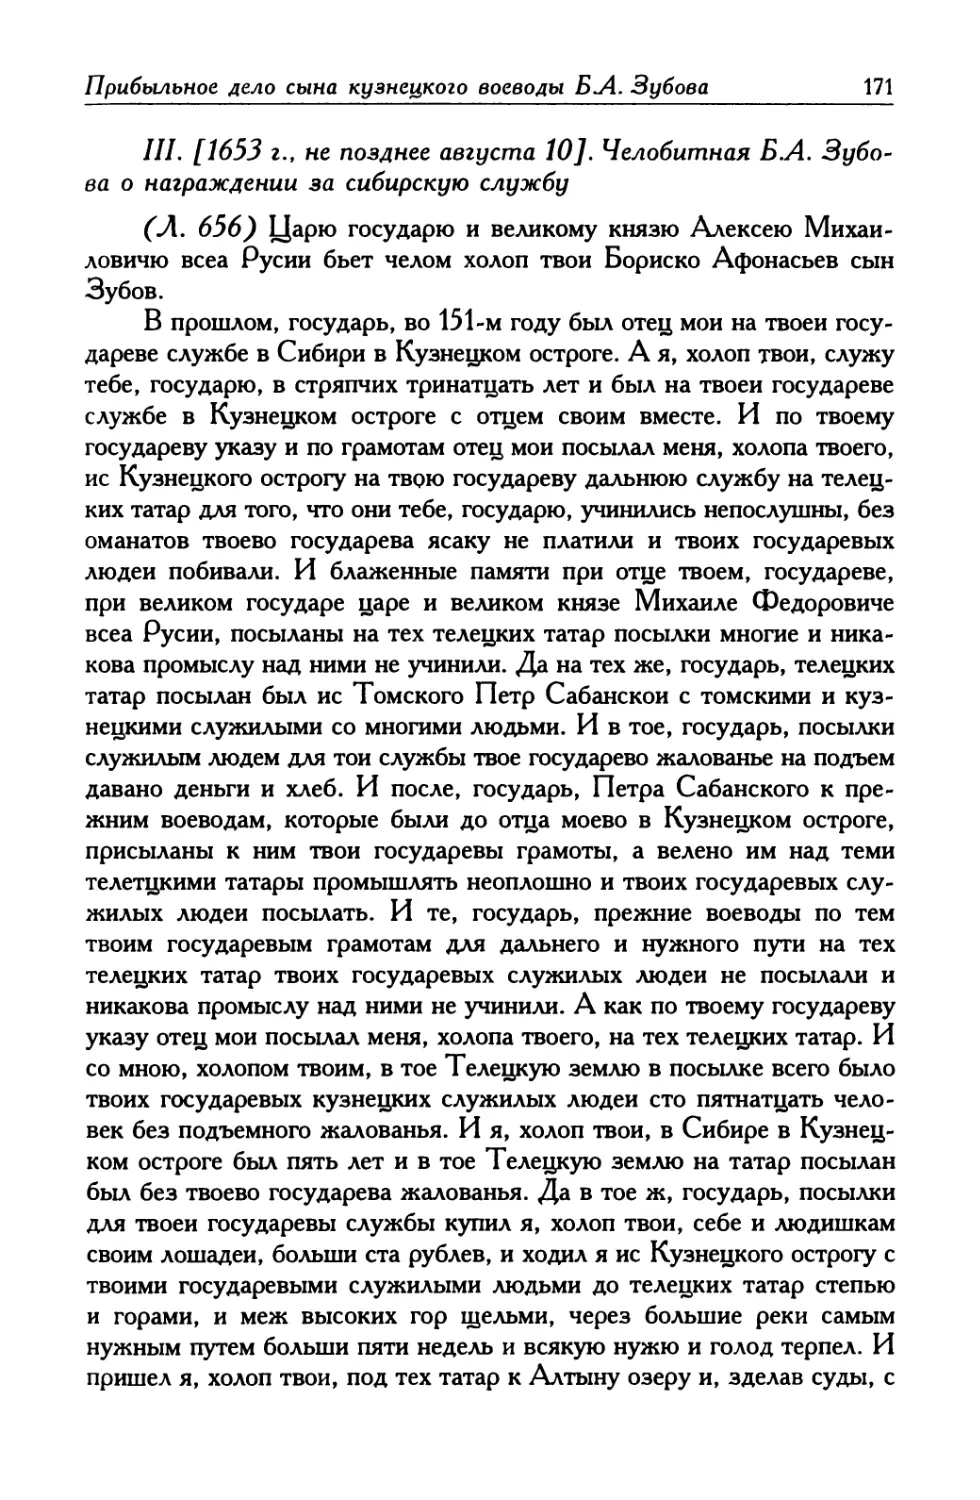 III. [1653 г., не позднее августа 10]. Челобитная Б. А. Зубова о награждении за сибирскую службу